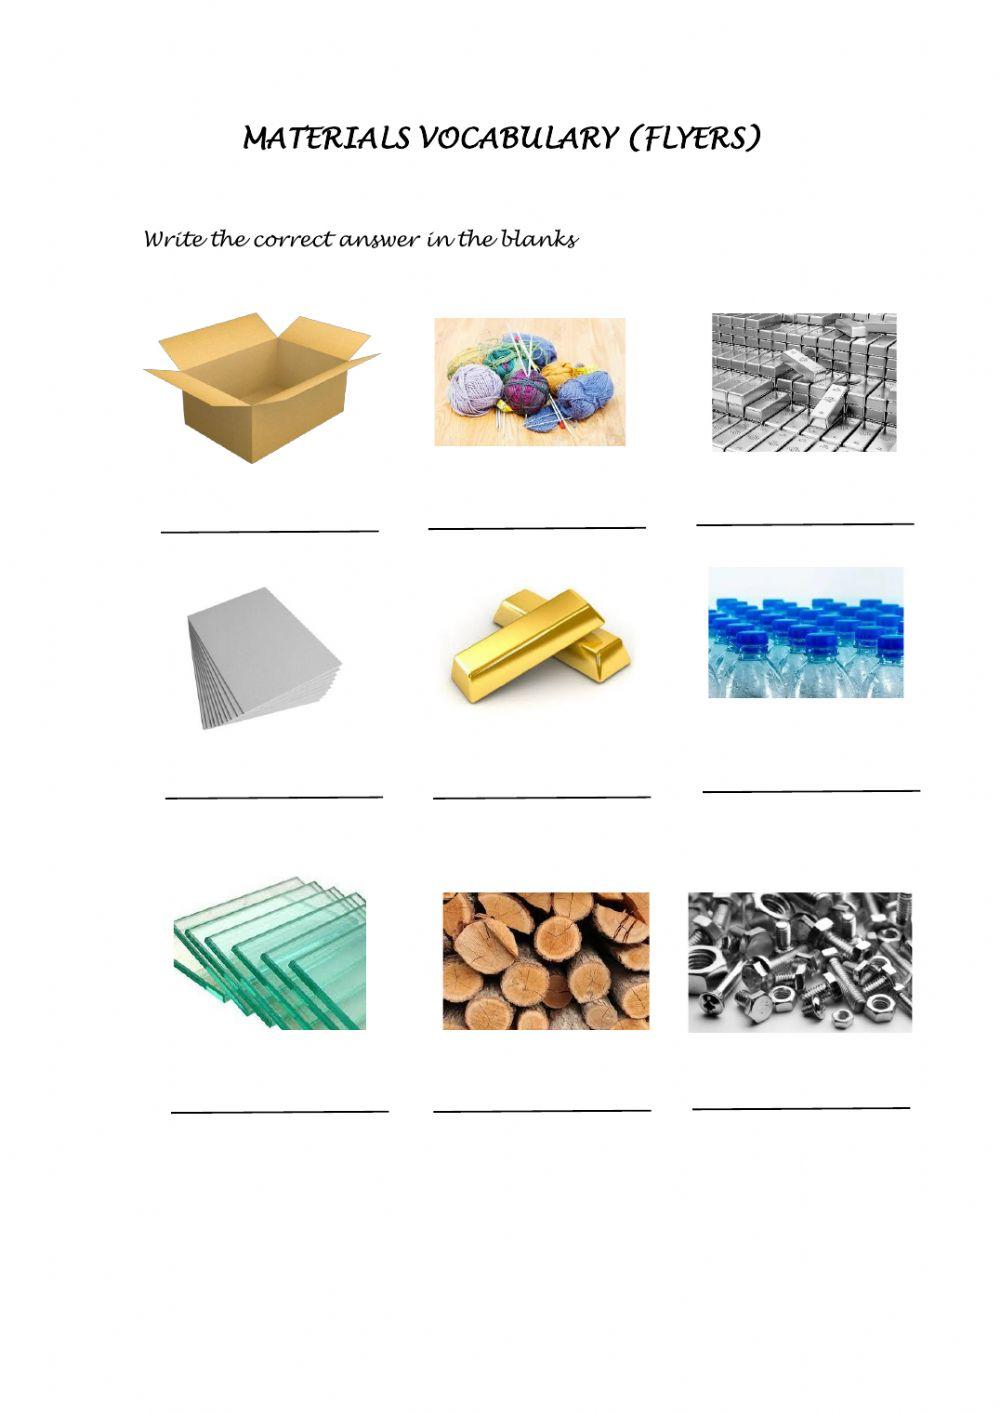 Materials vocabulary